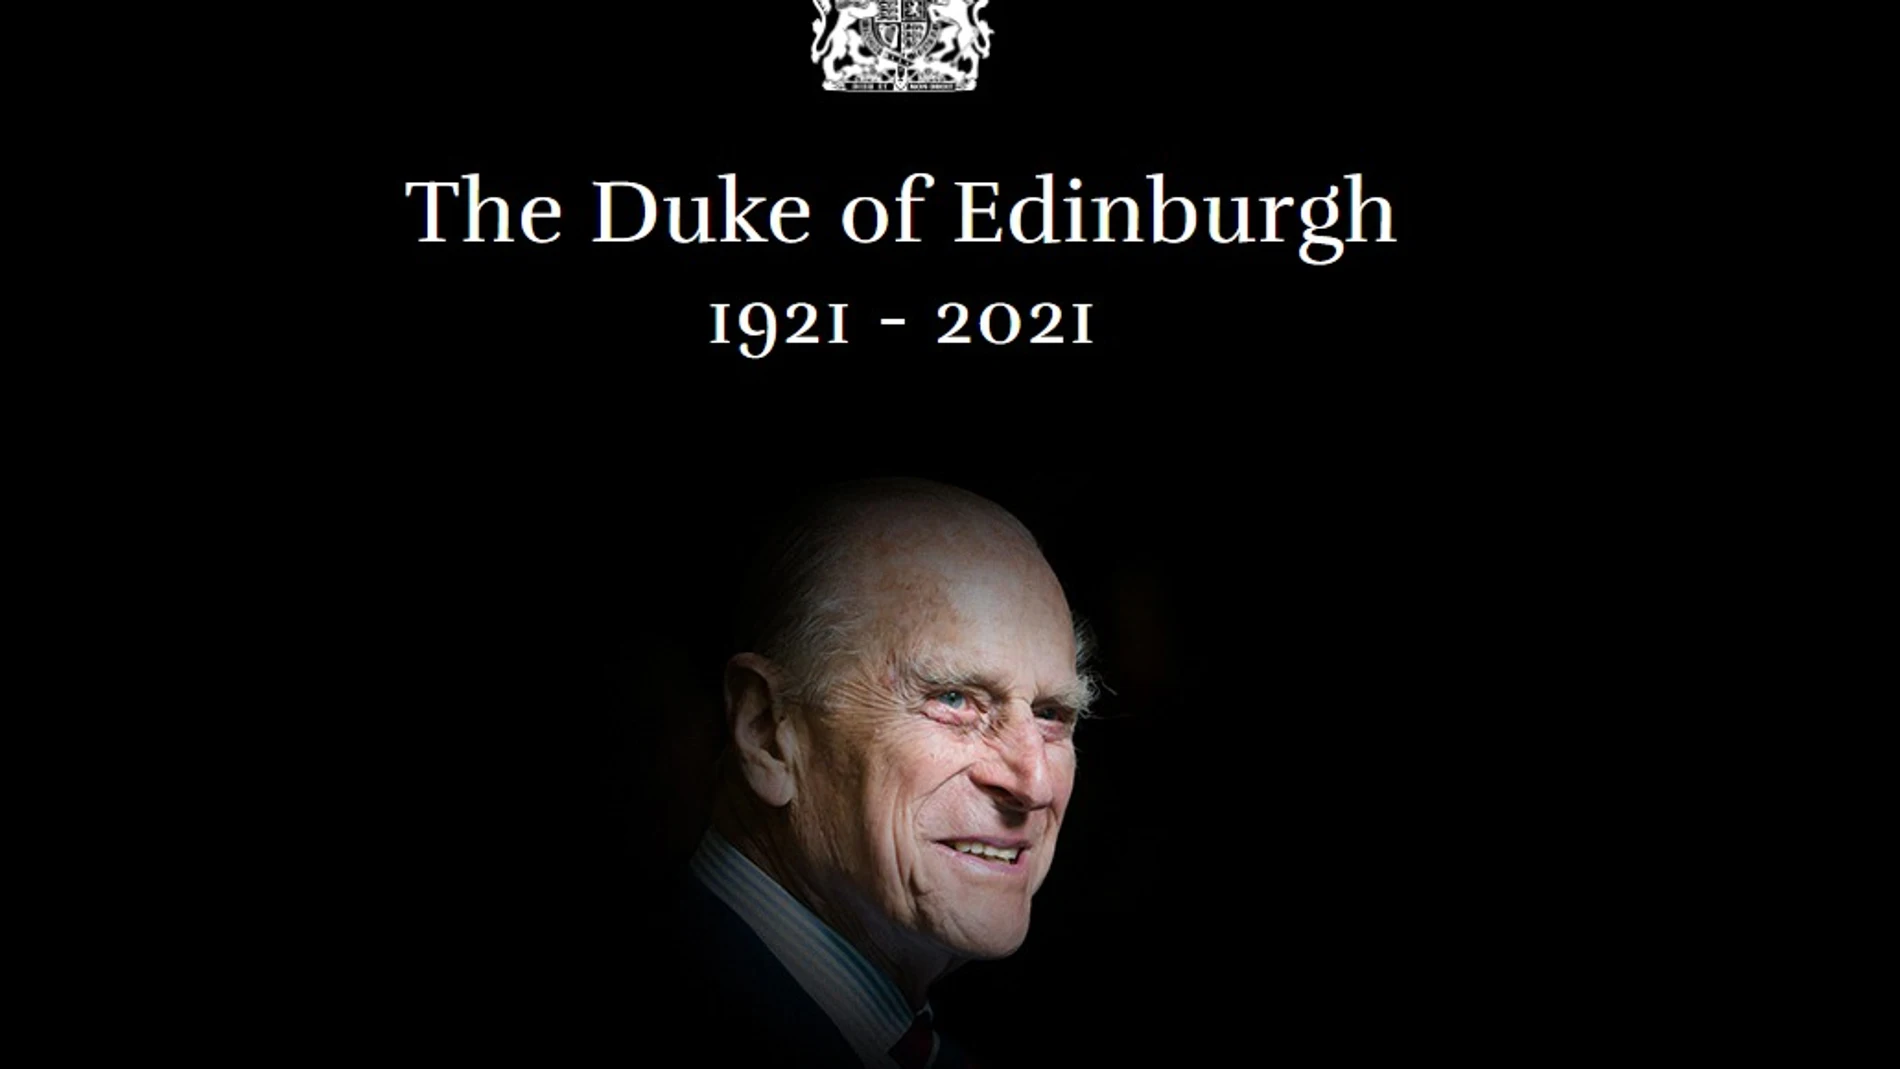 El comunicado oficial de la Casa Real británica sobre la muerte del Duque de Edimburgo